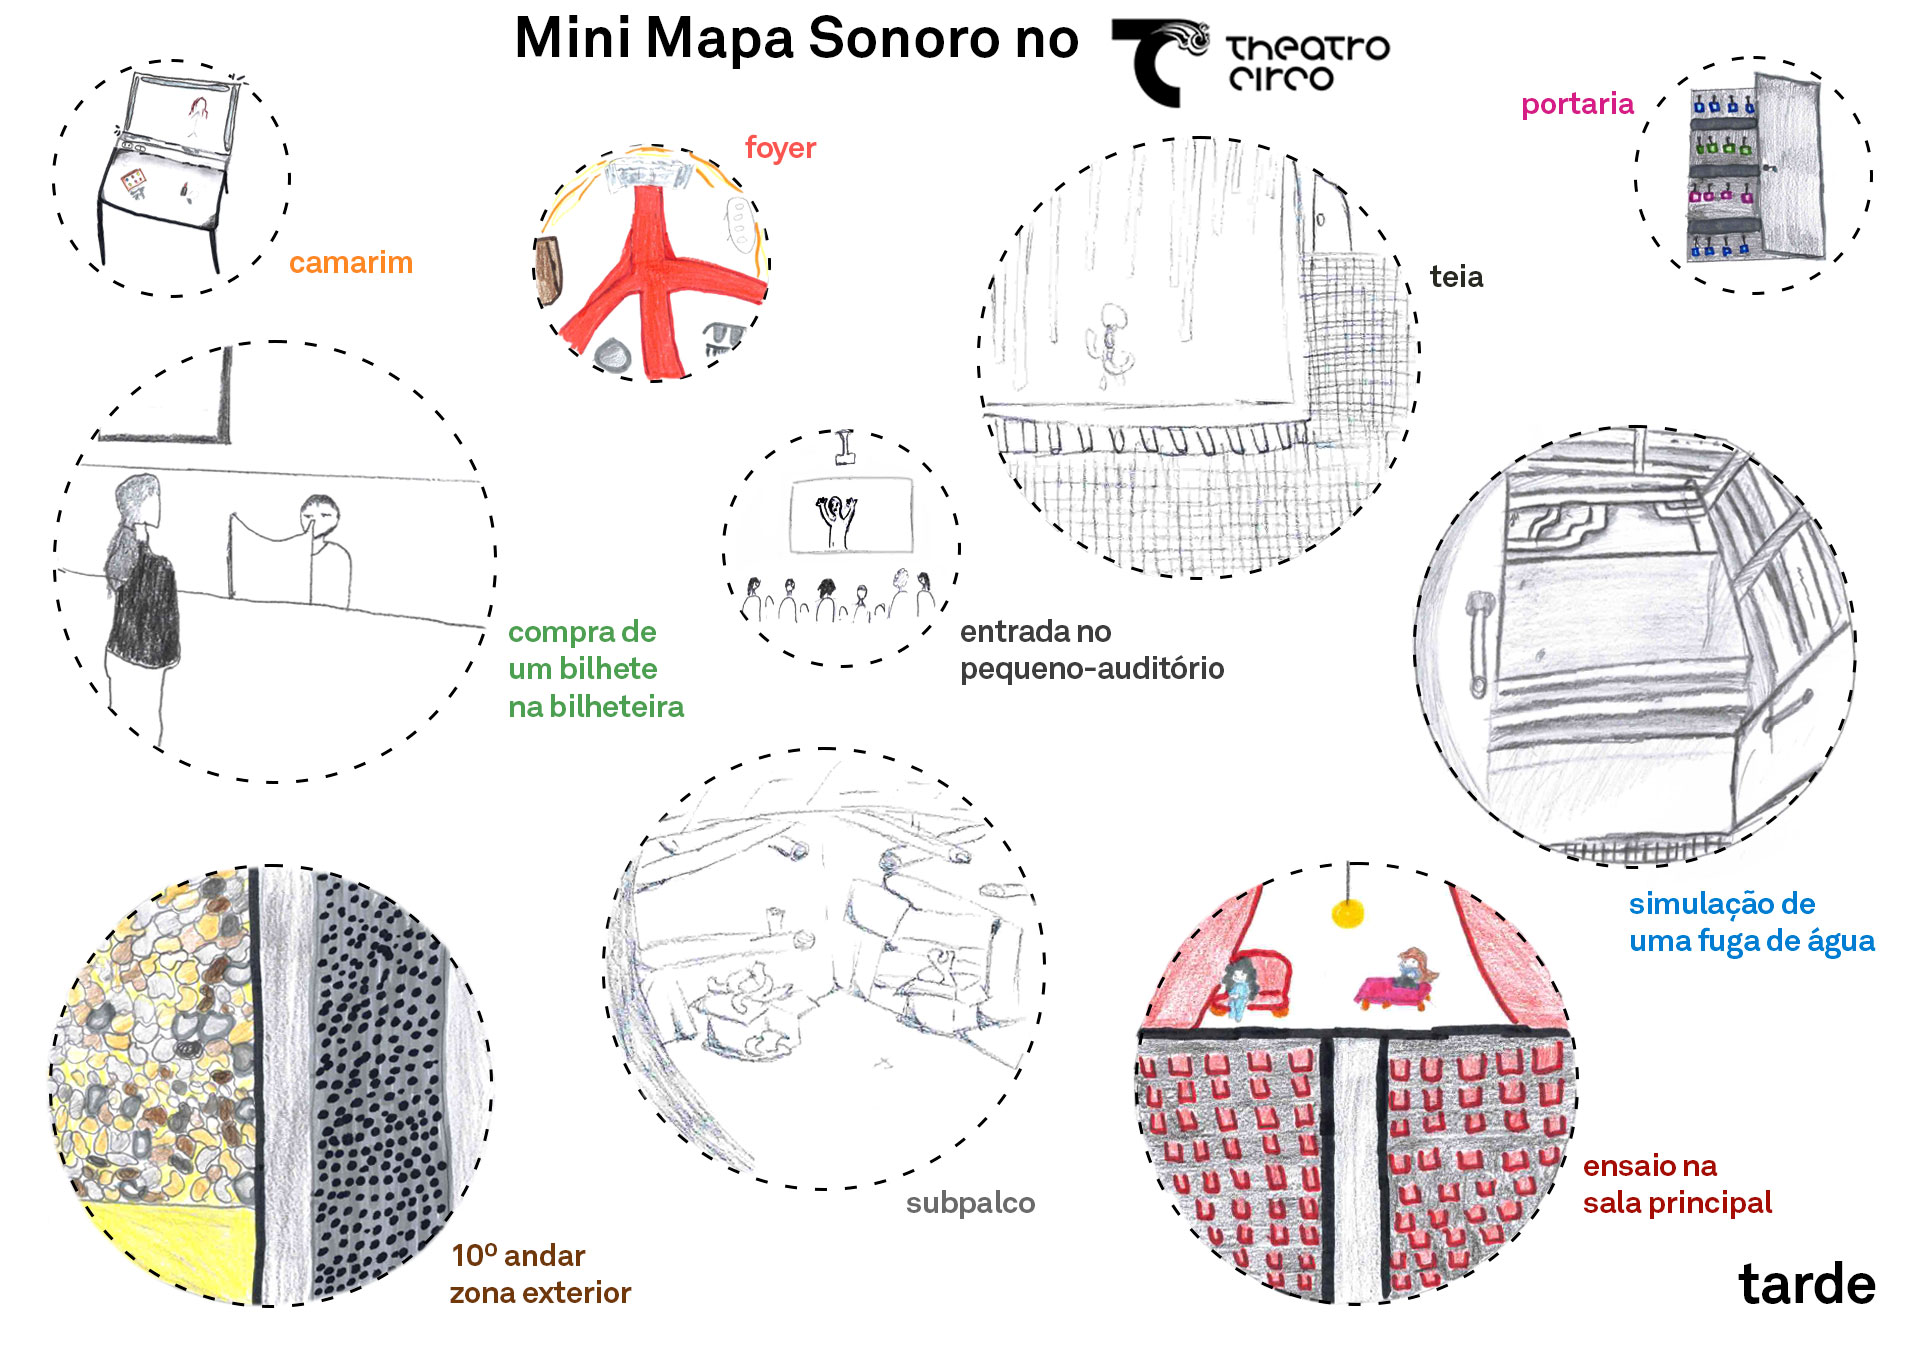 Mapa Mini Mapa Sonoro Mini Mapa Sonoro no Theatro Circo - EB 2/3 André Soares